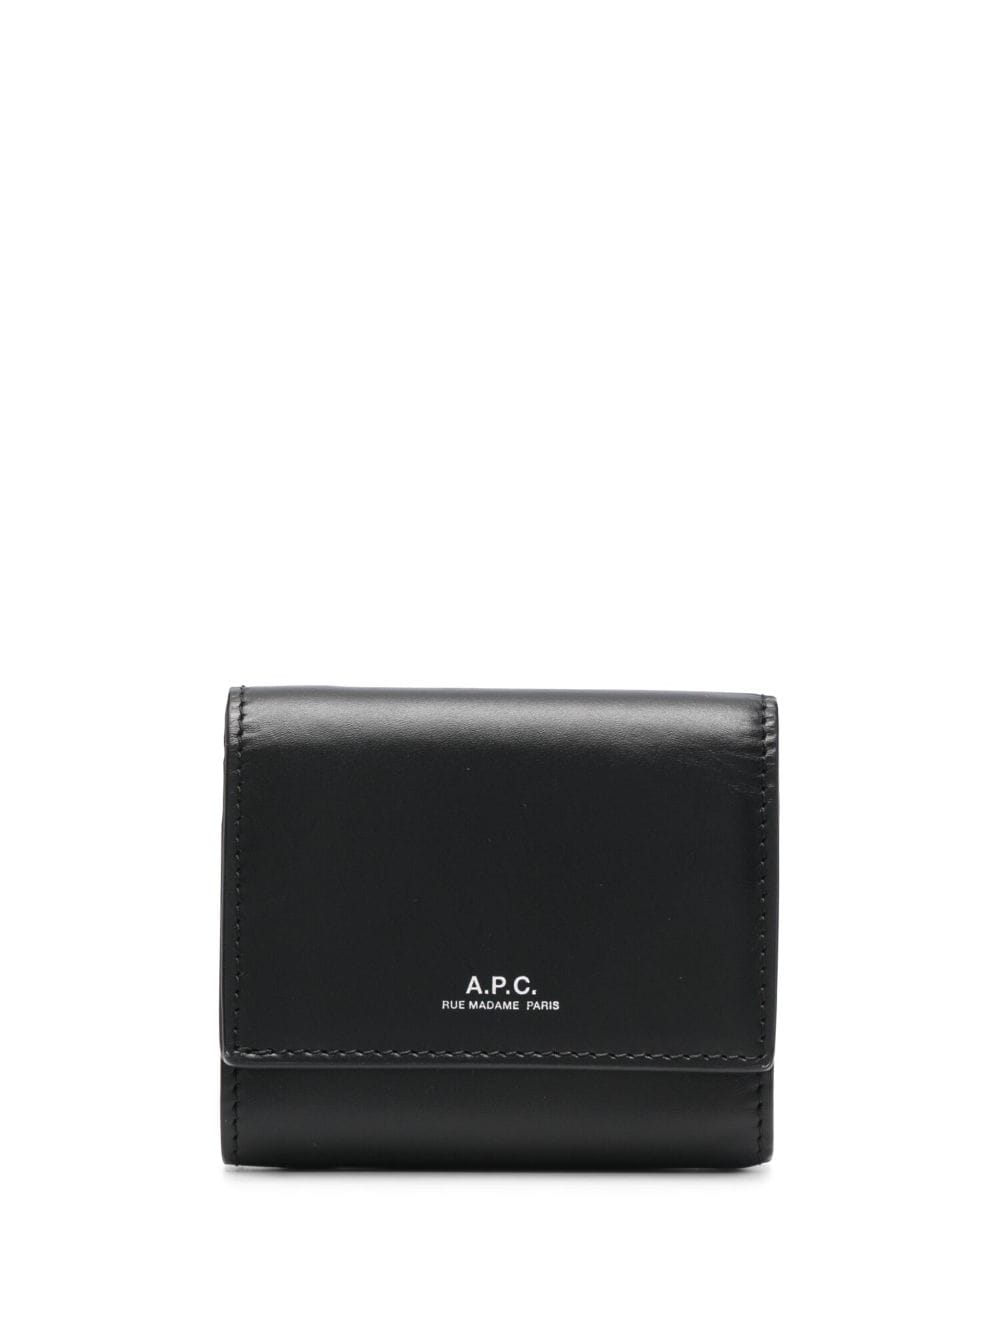 A.P.C. Lois compact wallet - Black von A.P.C.